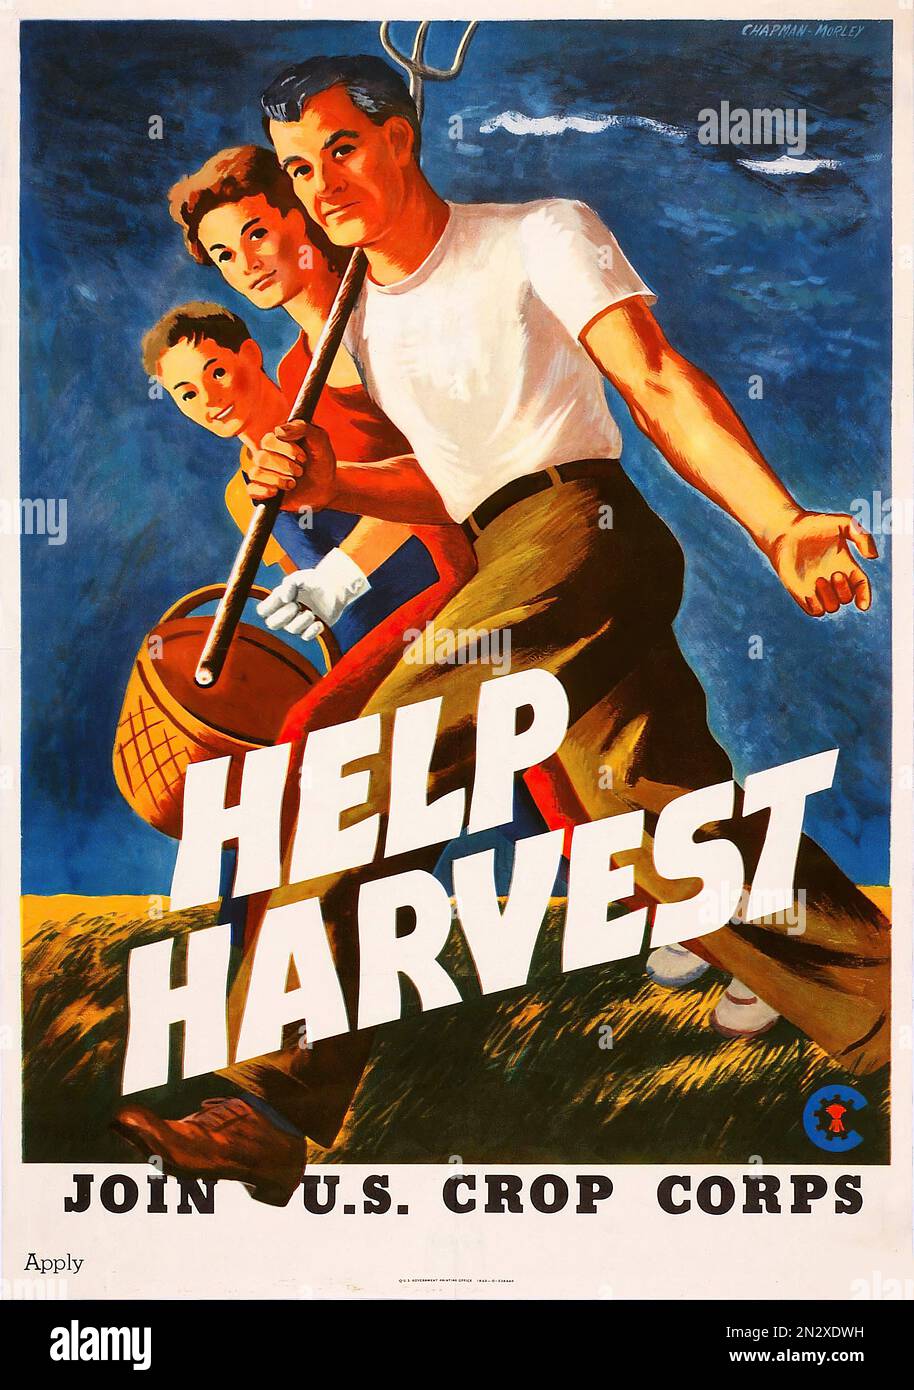 1943 ÉTATS-UNIS Crop corps ! - Seconde Guerre mondiale - affiche de propagande des États-Unis Banque D'Images